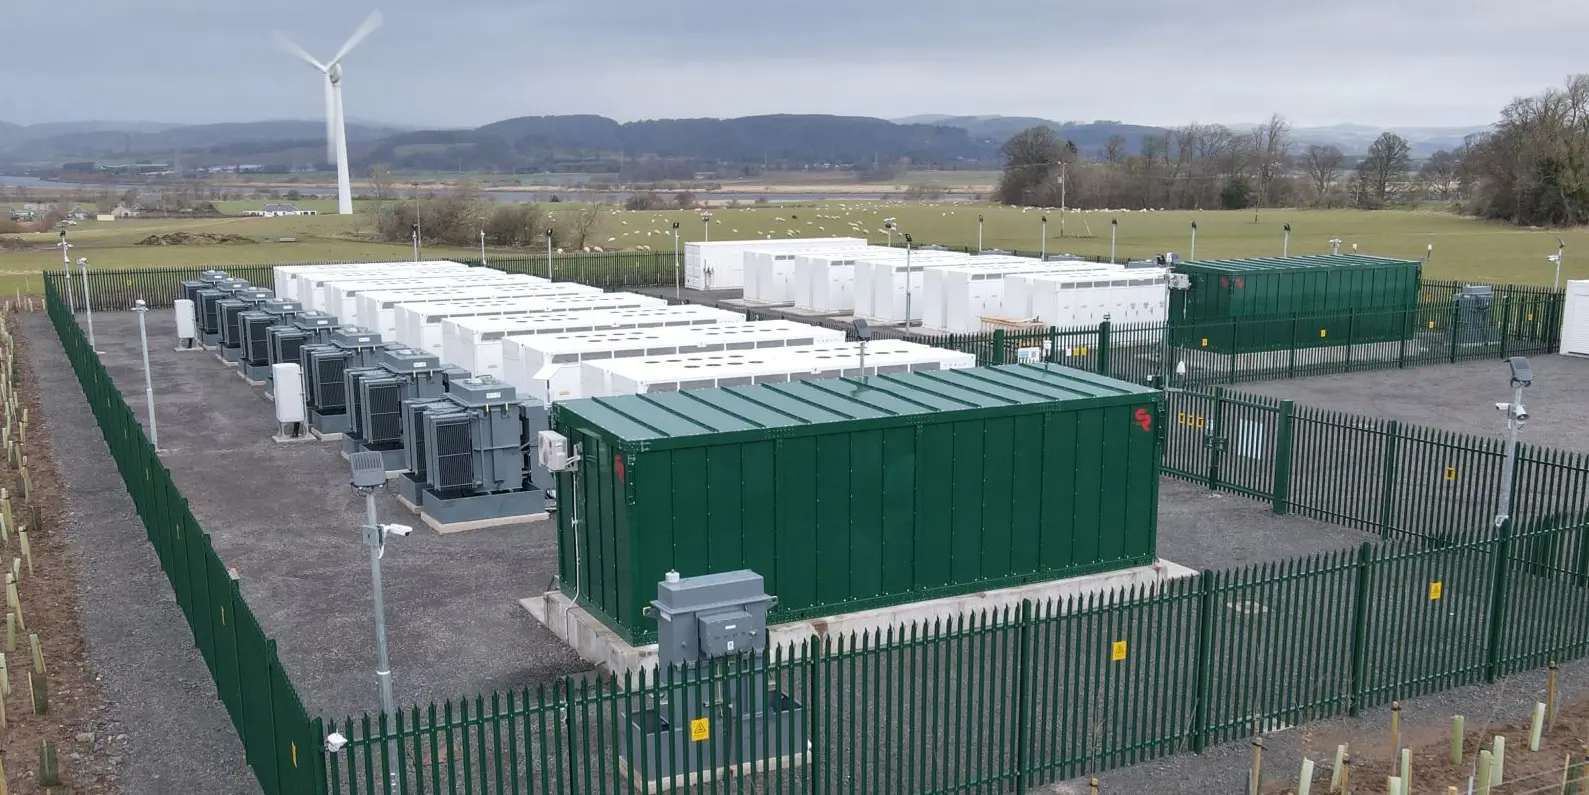 UK largest energy storage project